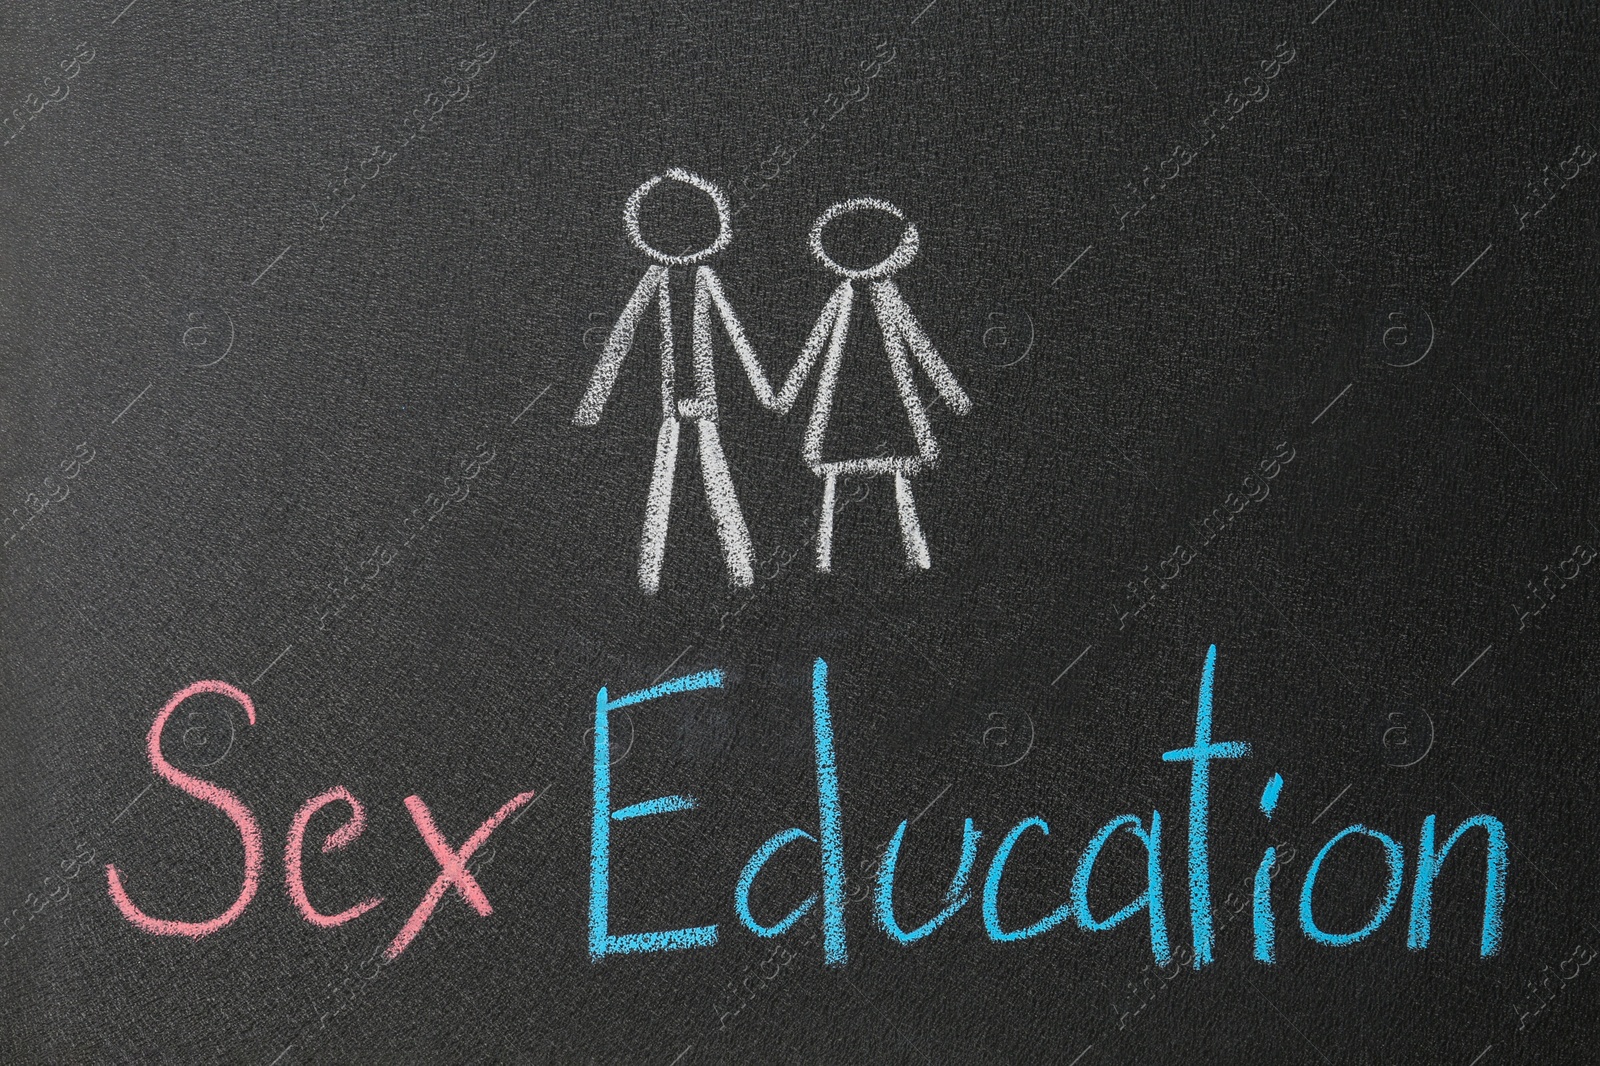 Photo of Phrase "SEX EDUCATION" written on black chalkboard